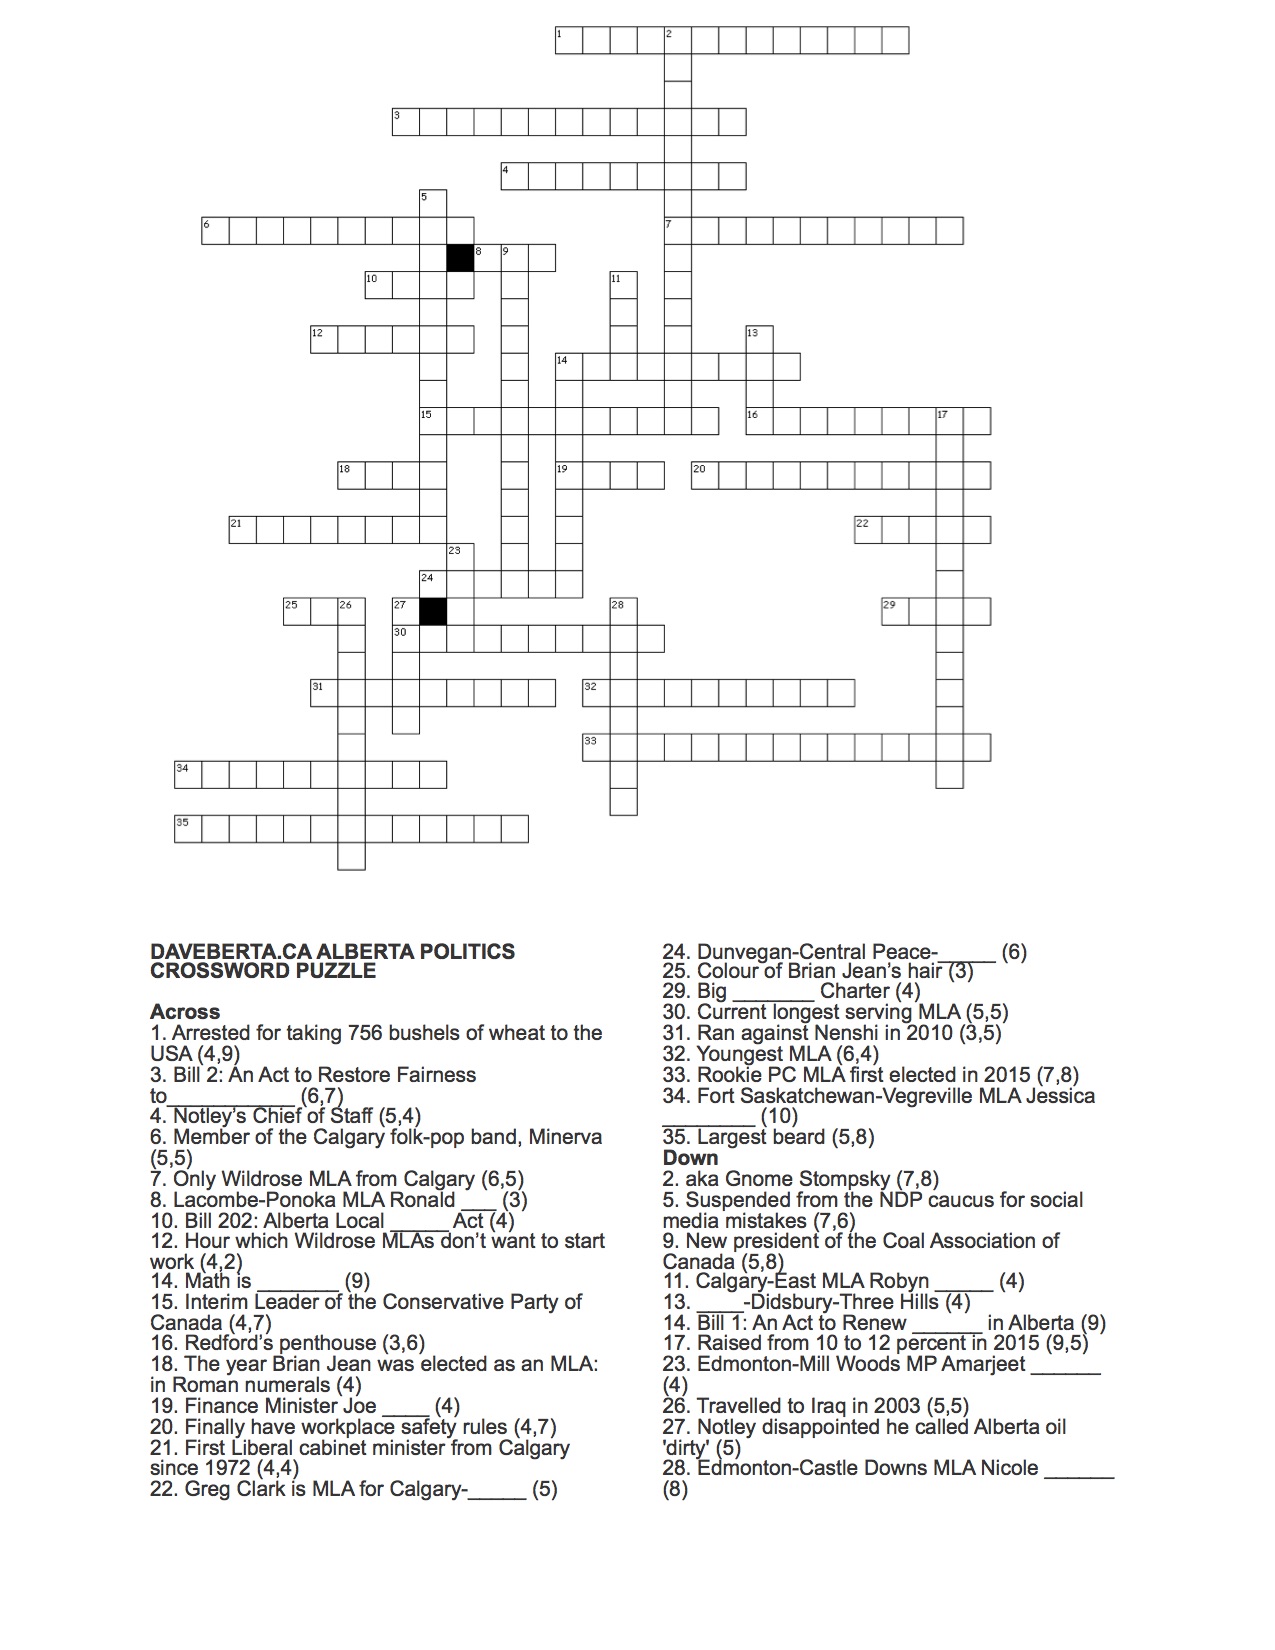 Daveberta Alberta Politics Crossword Puzzle